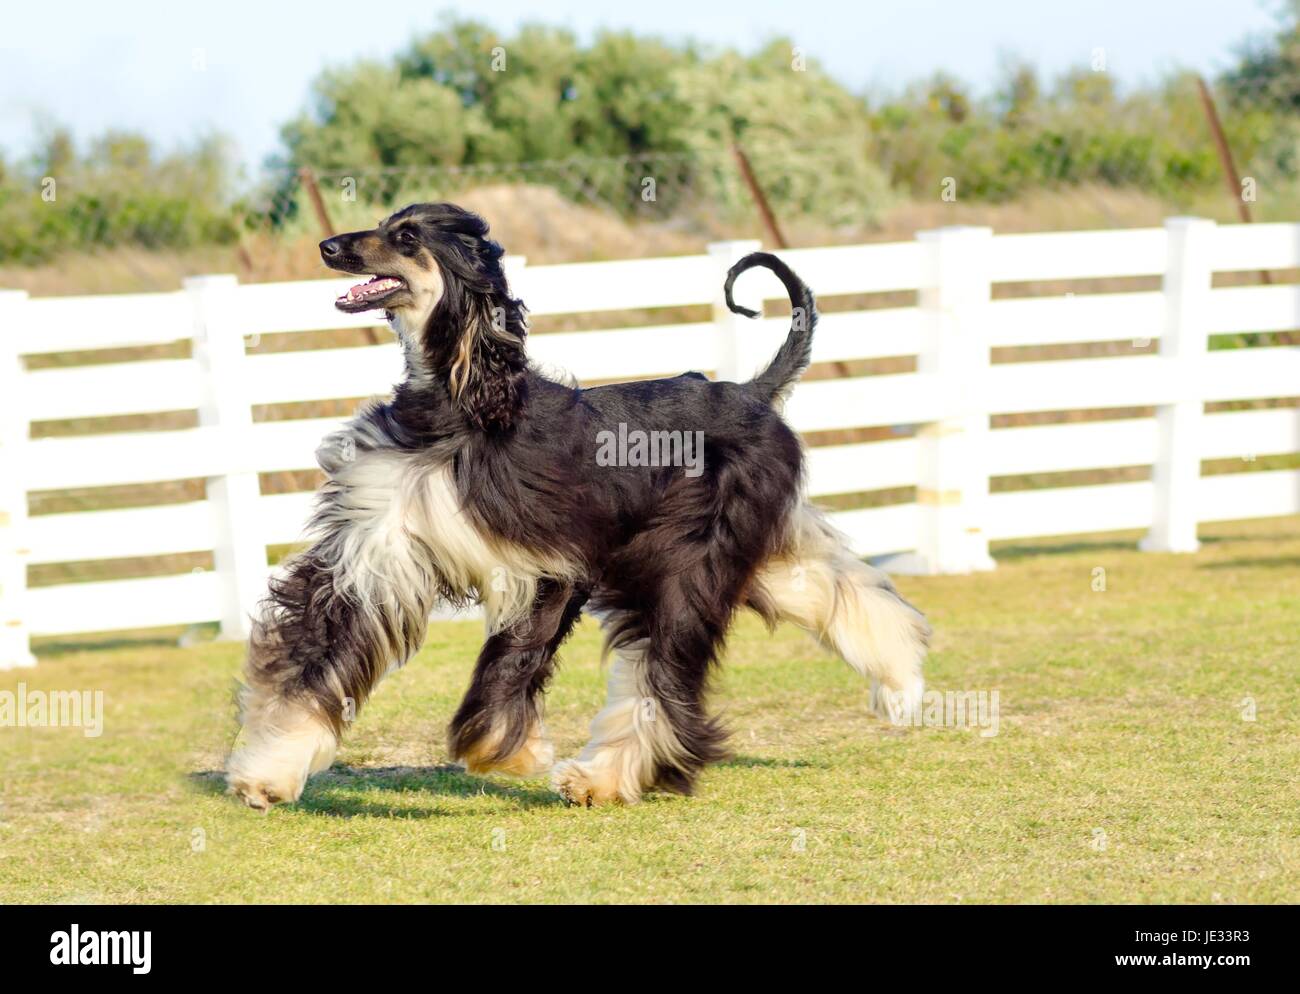 Ein Profil-Blick auf eine gesunde schöne Grizzle, Black And Tan, Afghanischer Windhund zu Fuß auf dem Rasen suchen glücklich und fröhlich. Persische Windhund Hunde sind Rank und schlank mit langen, schmalen Kopf, langen, seidigen Fell und Ringelschwanz. Stockfoto